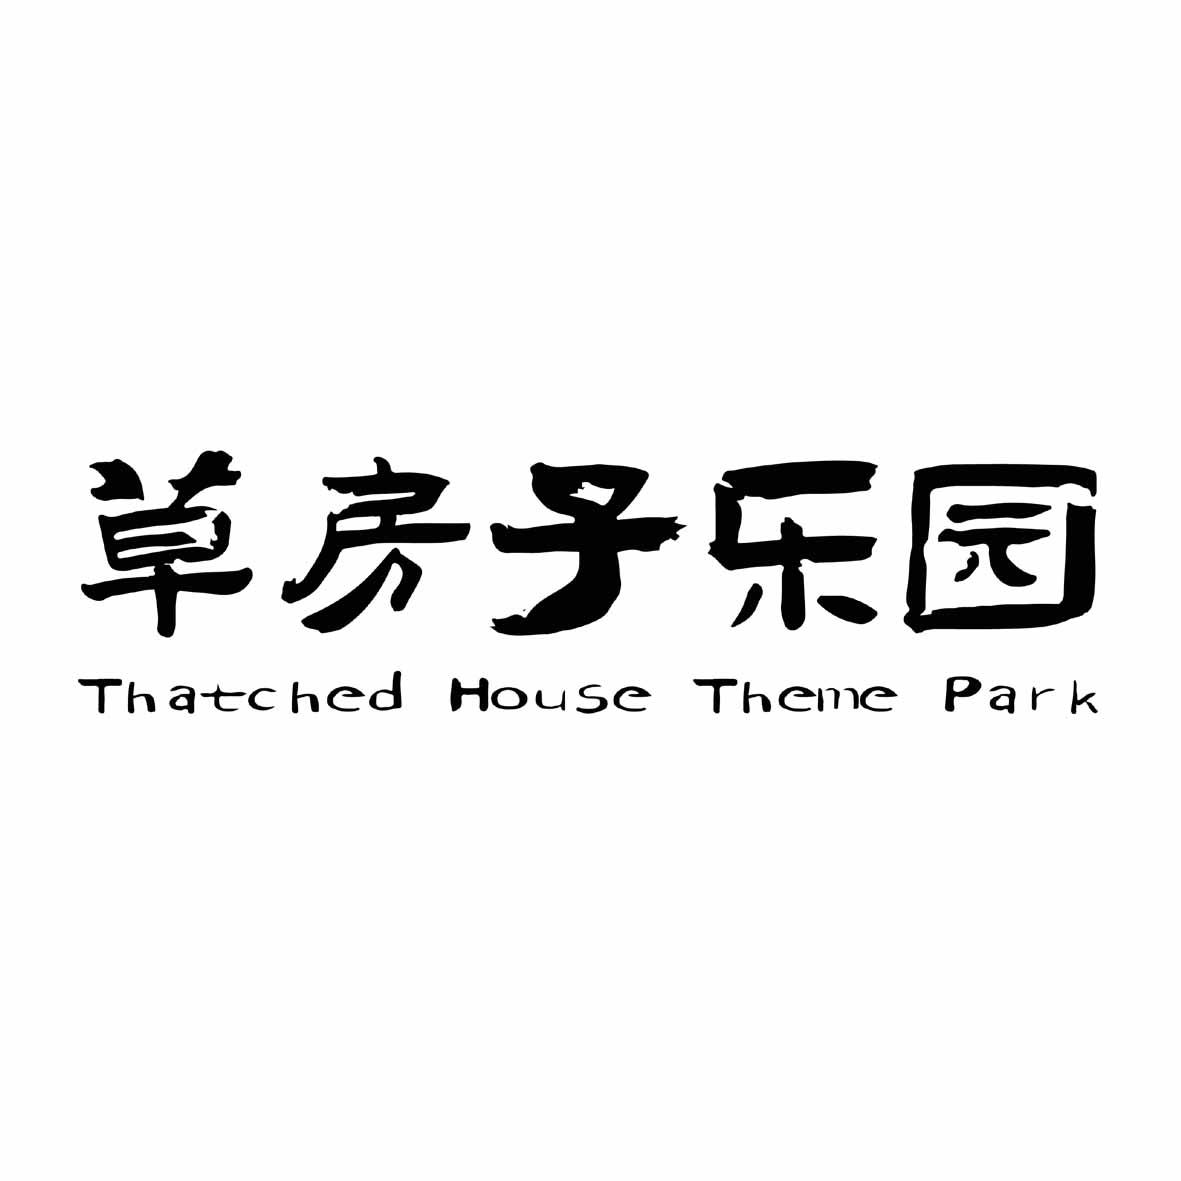 商标文字草房子乐园 thatched house theme park商标注册号 50460119